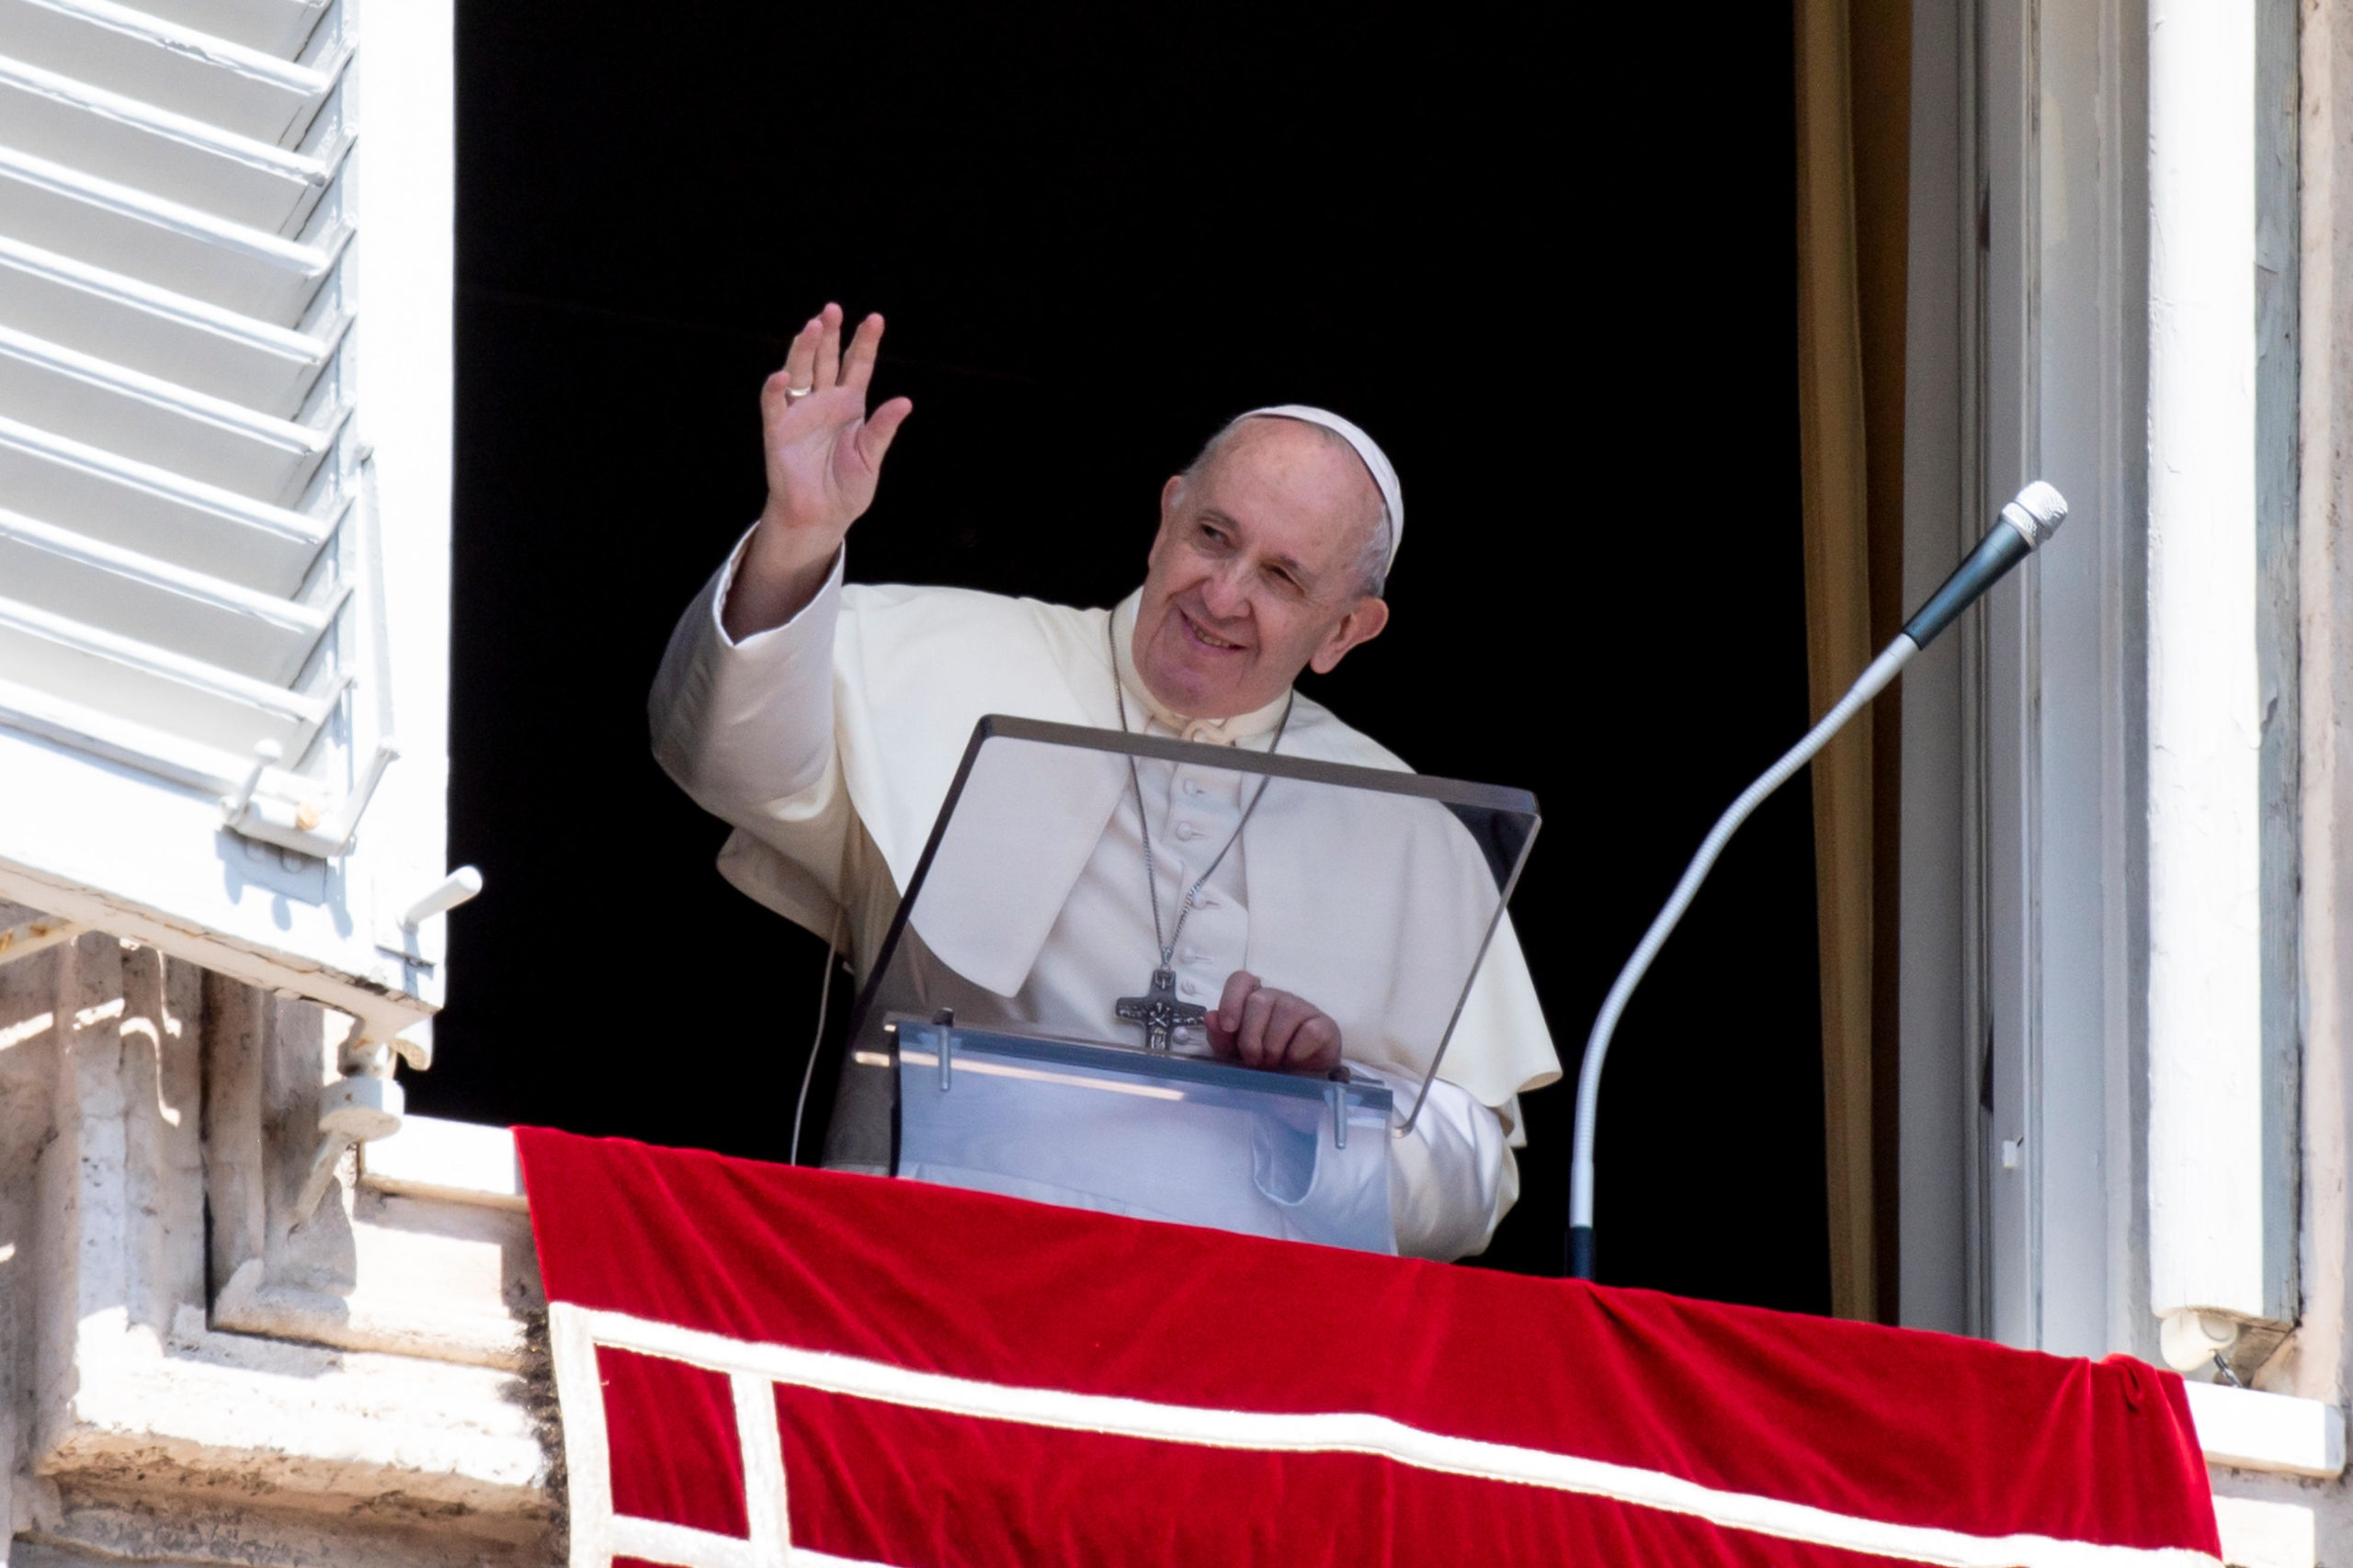 Ángelus saludos del Papa